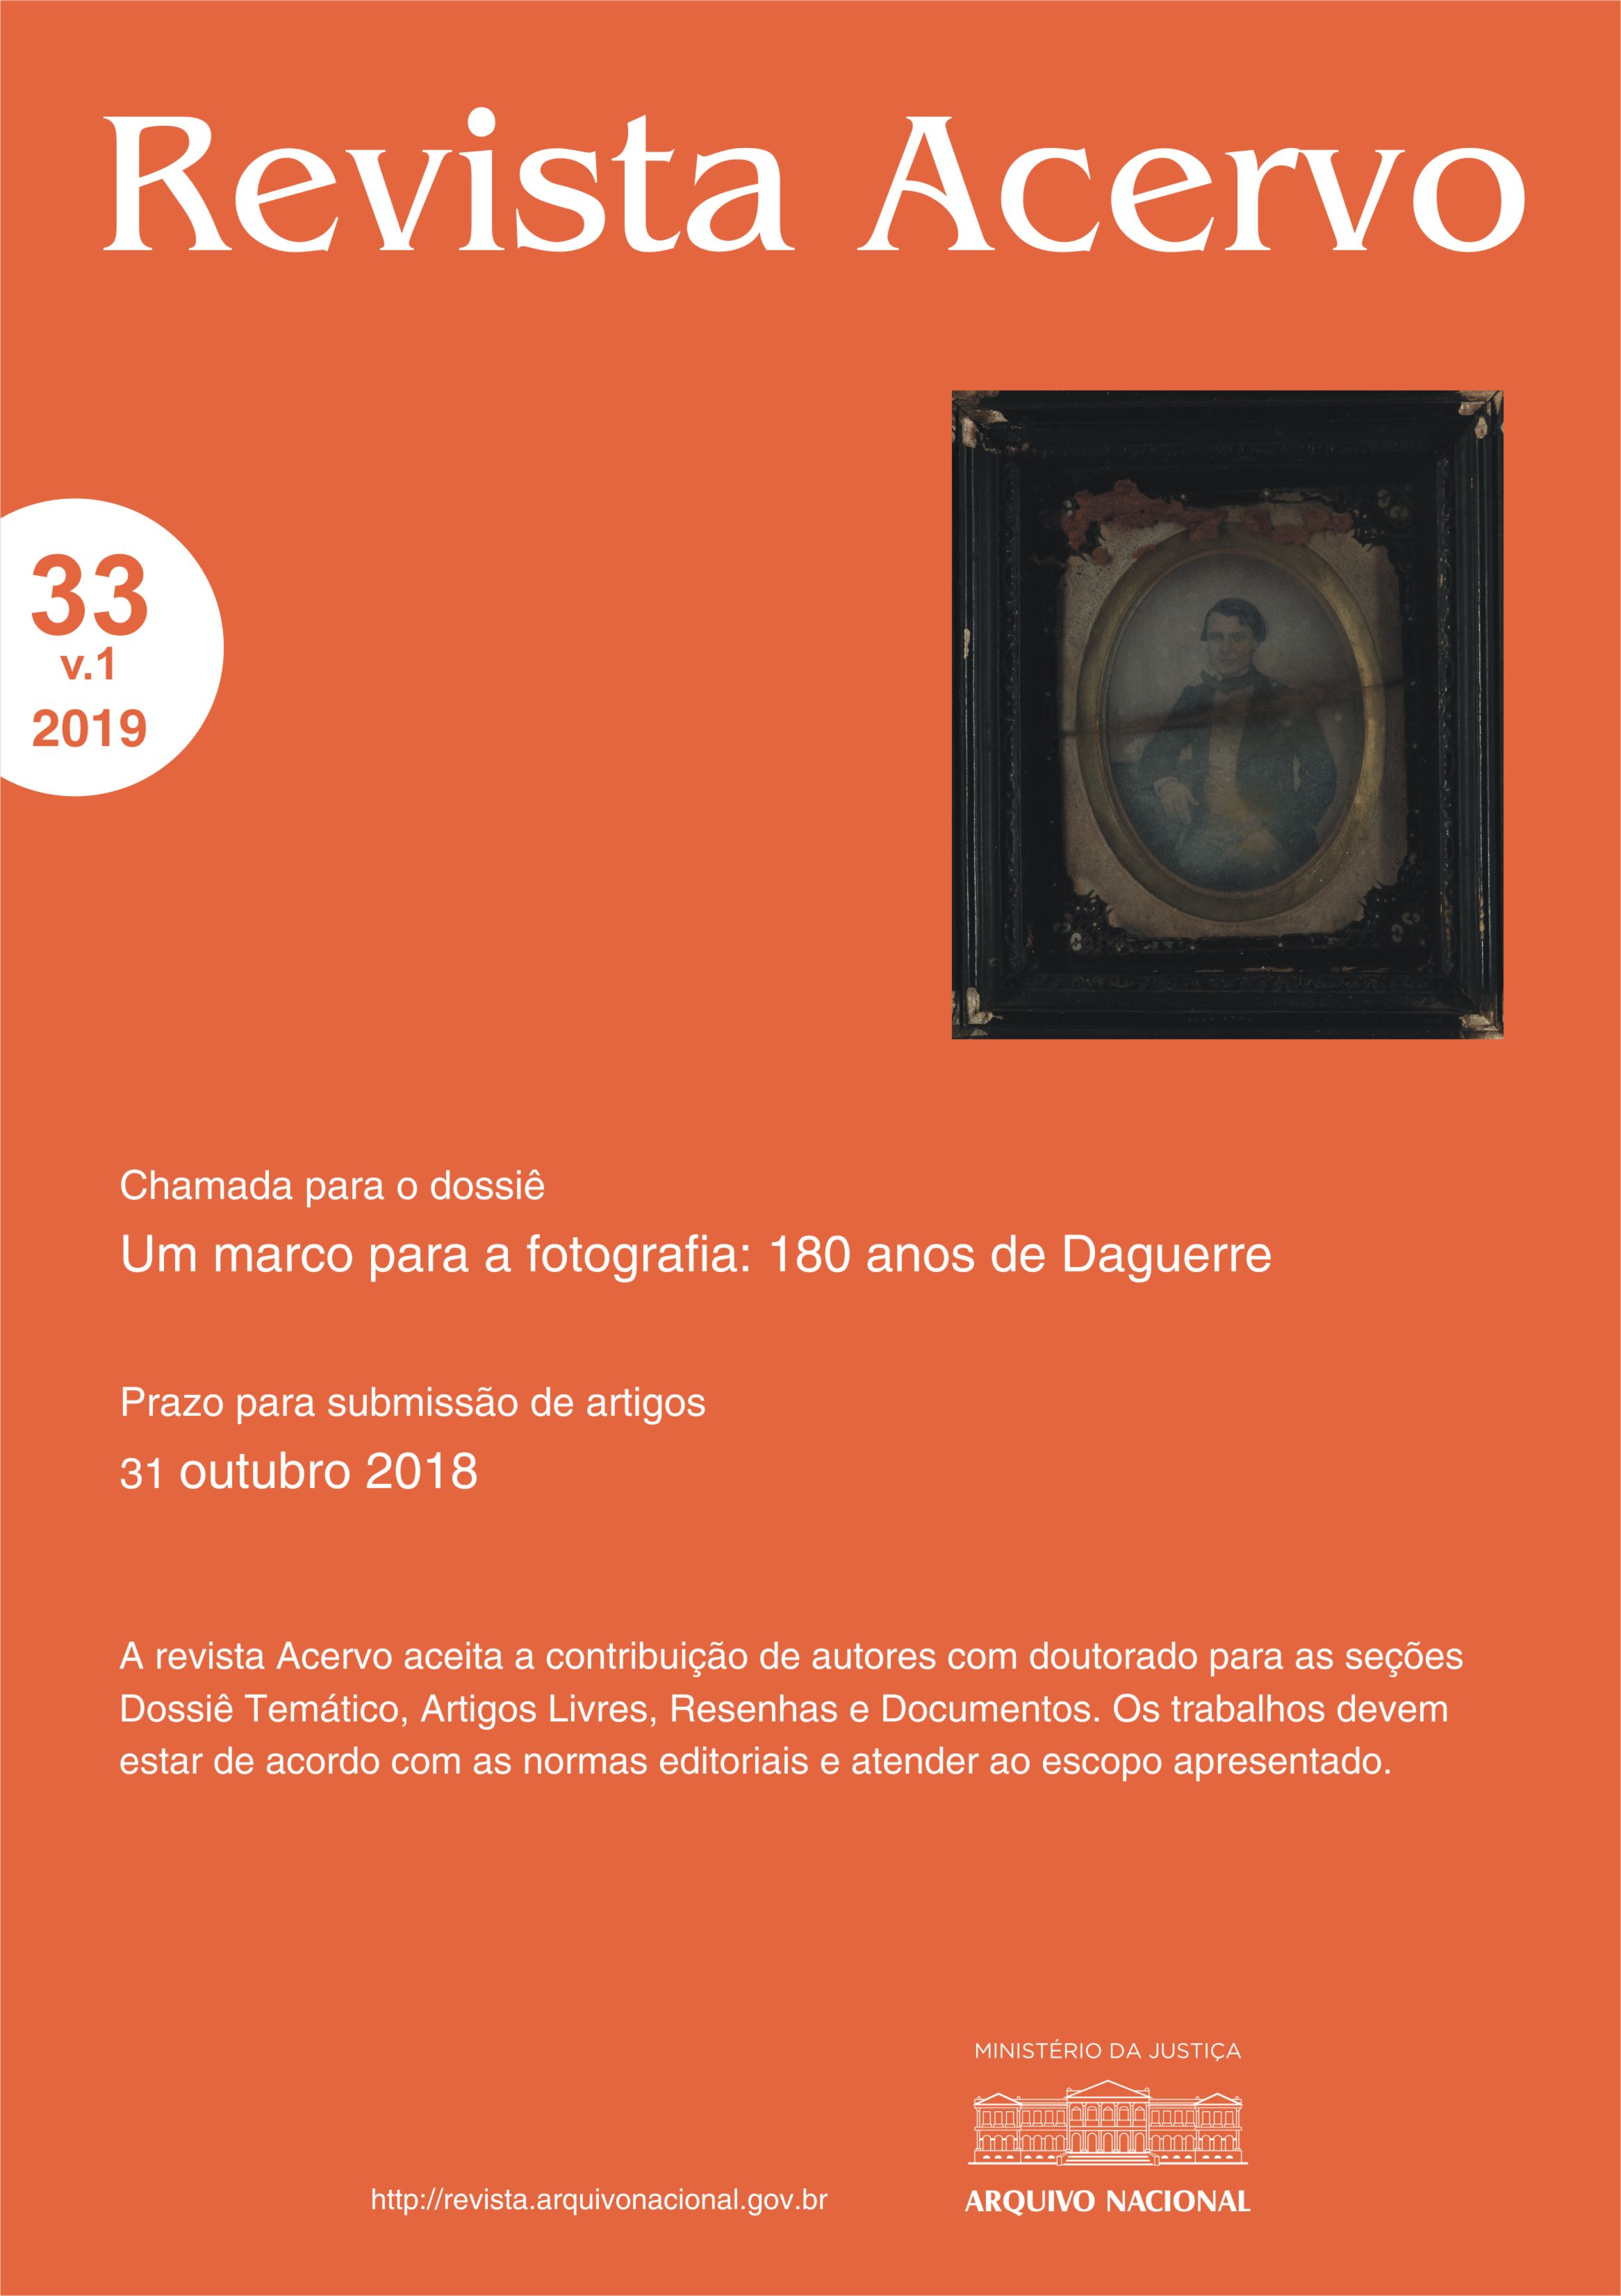 Dossiê "Um marco para a fotografia: 180 anos de Daguerre"